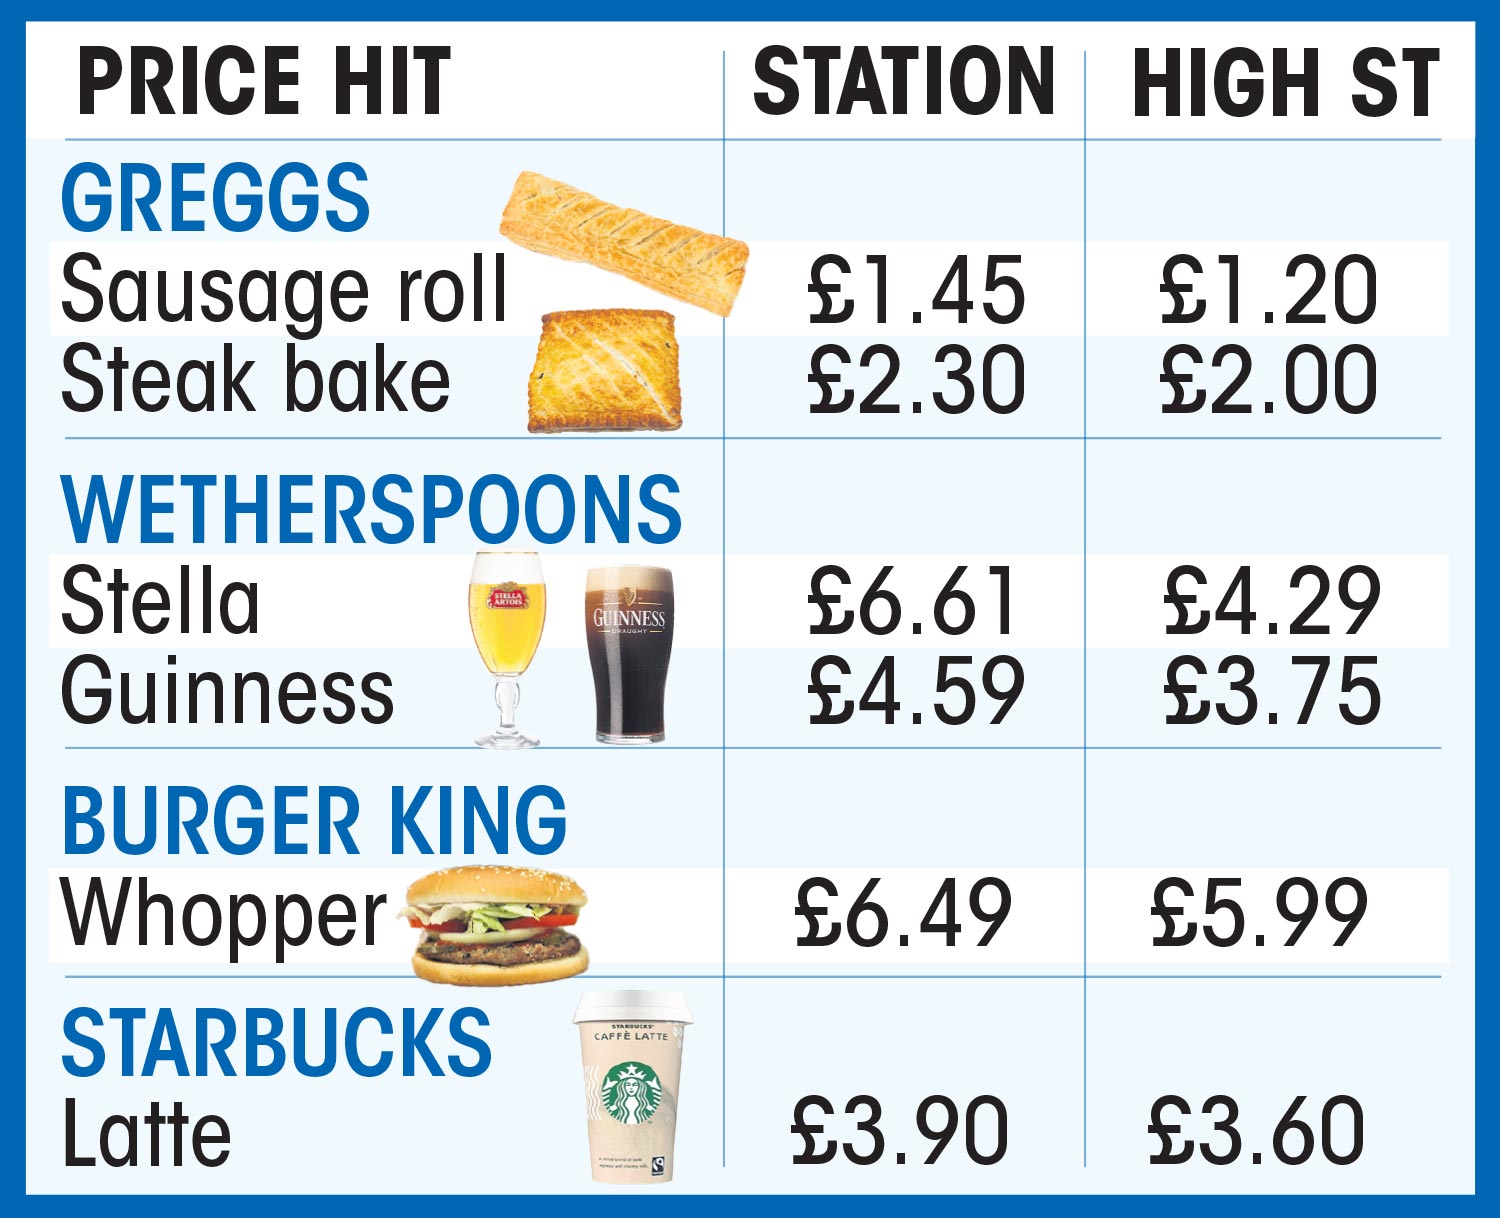 Bahnhofspreise im Vergleich zu Hauptstraßenpreisen